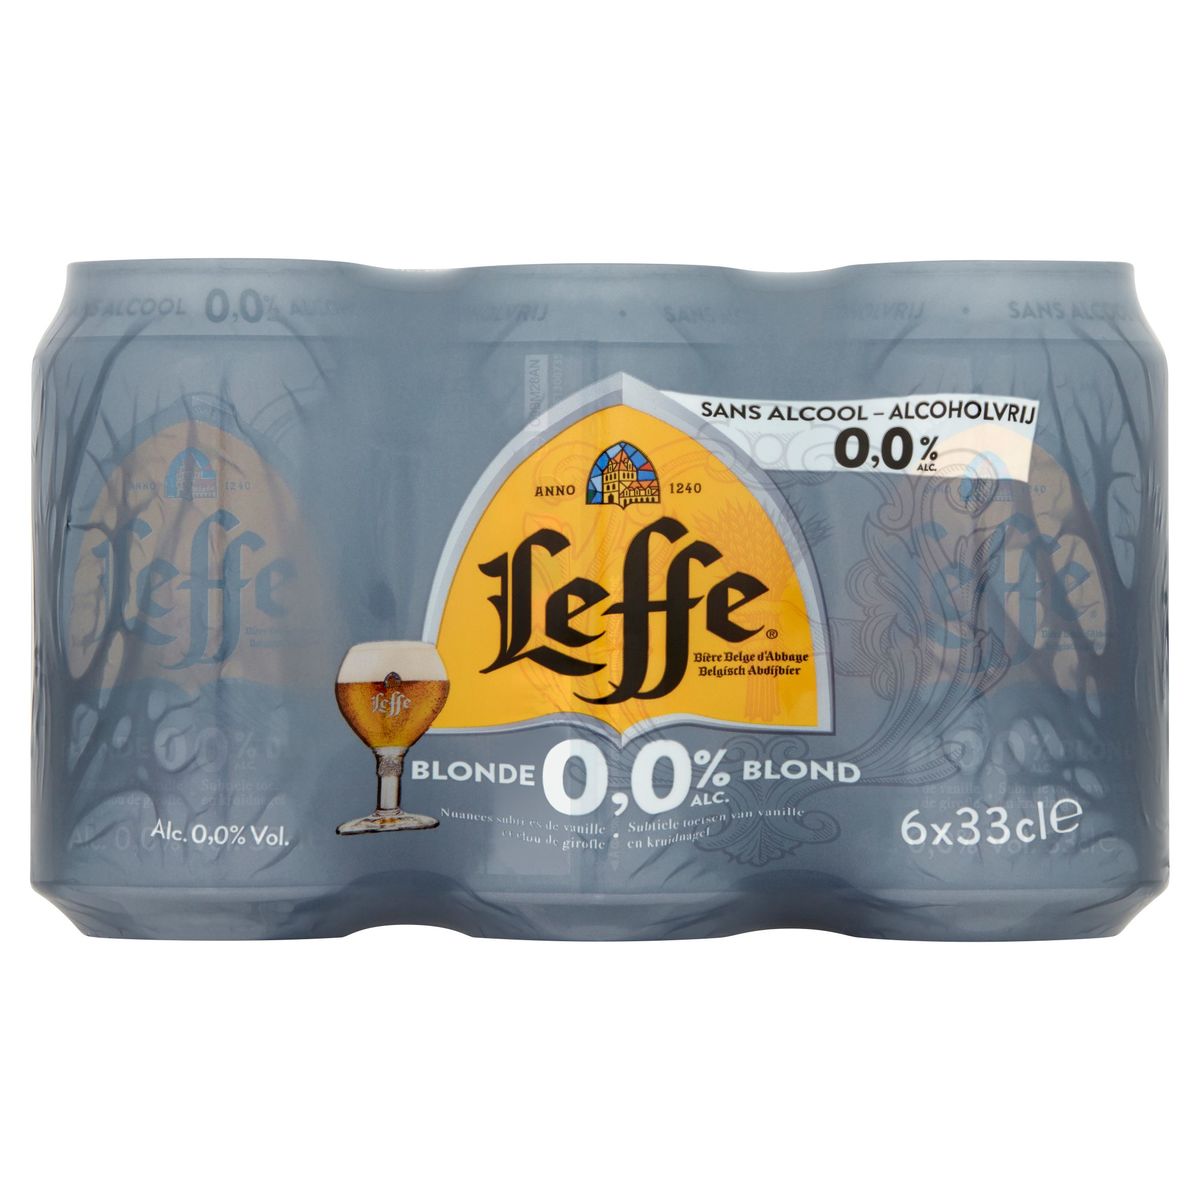 Leffe Bière Belge d'Abbaye Blonde 0.0% Alc. Canettes 6 x 33 cl